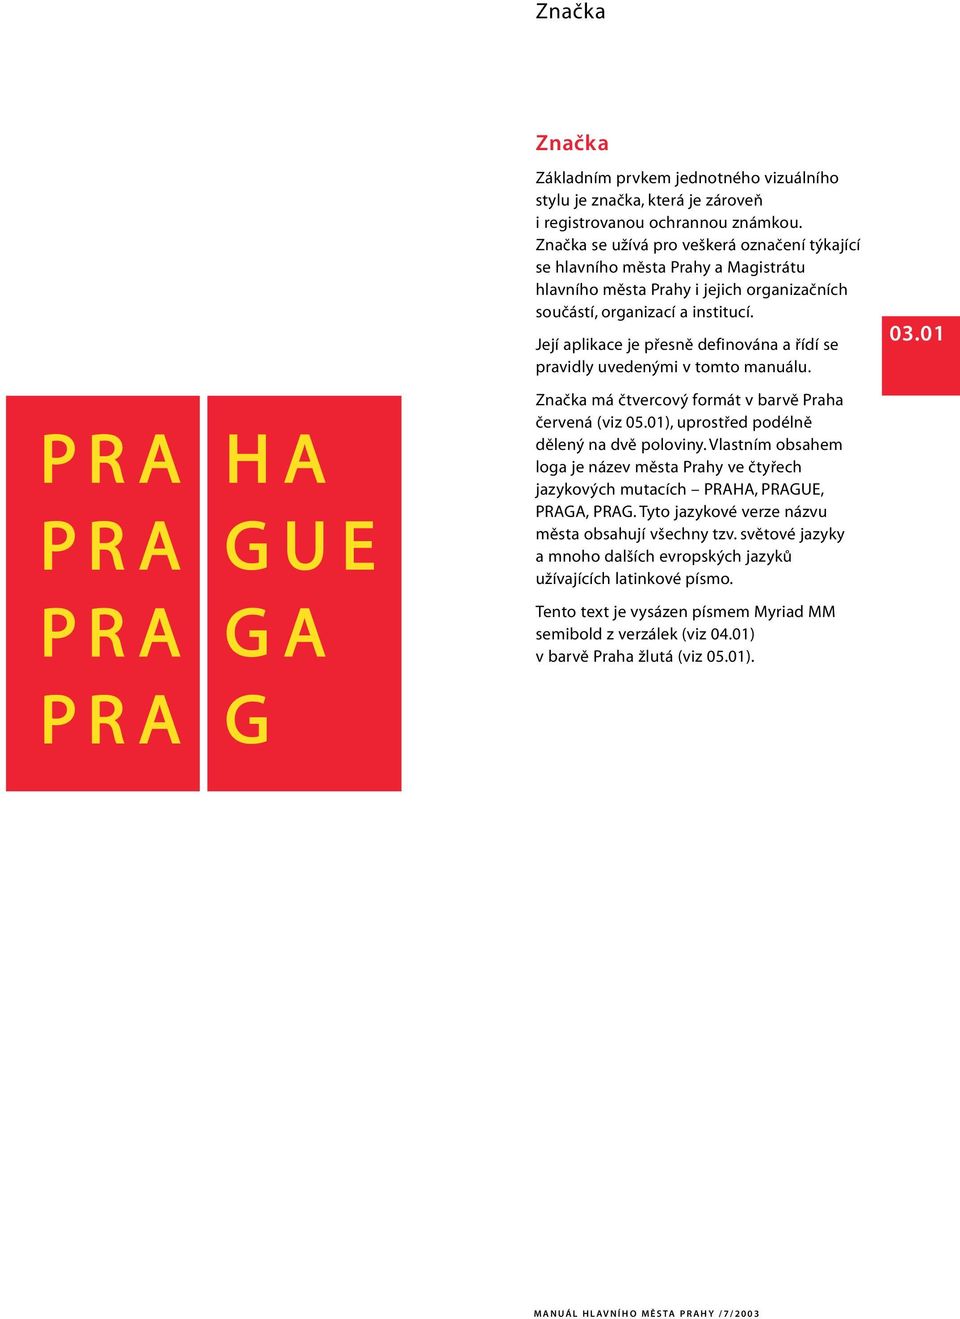 Její aplikace je přesně definována a řídí se pravidly uvedenými v tomto manuálu. 03.01 Značka má čtvercový formát v barvě Praha červená (viz 05.01), uprostřed podélně dělený na dvě poloviny.